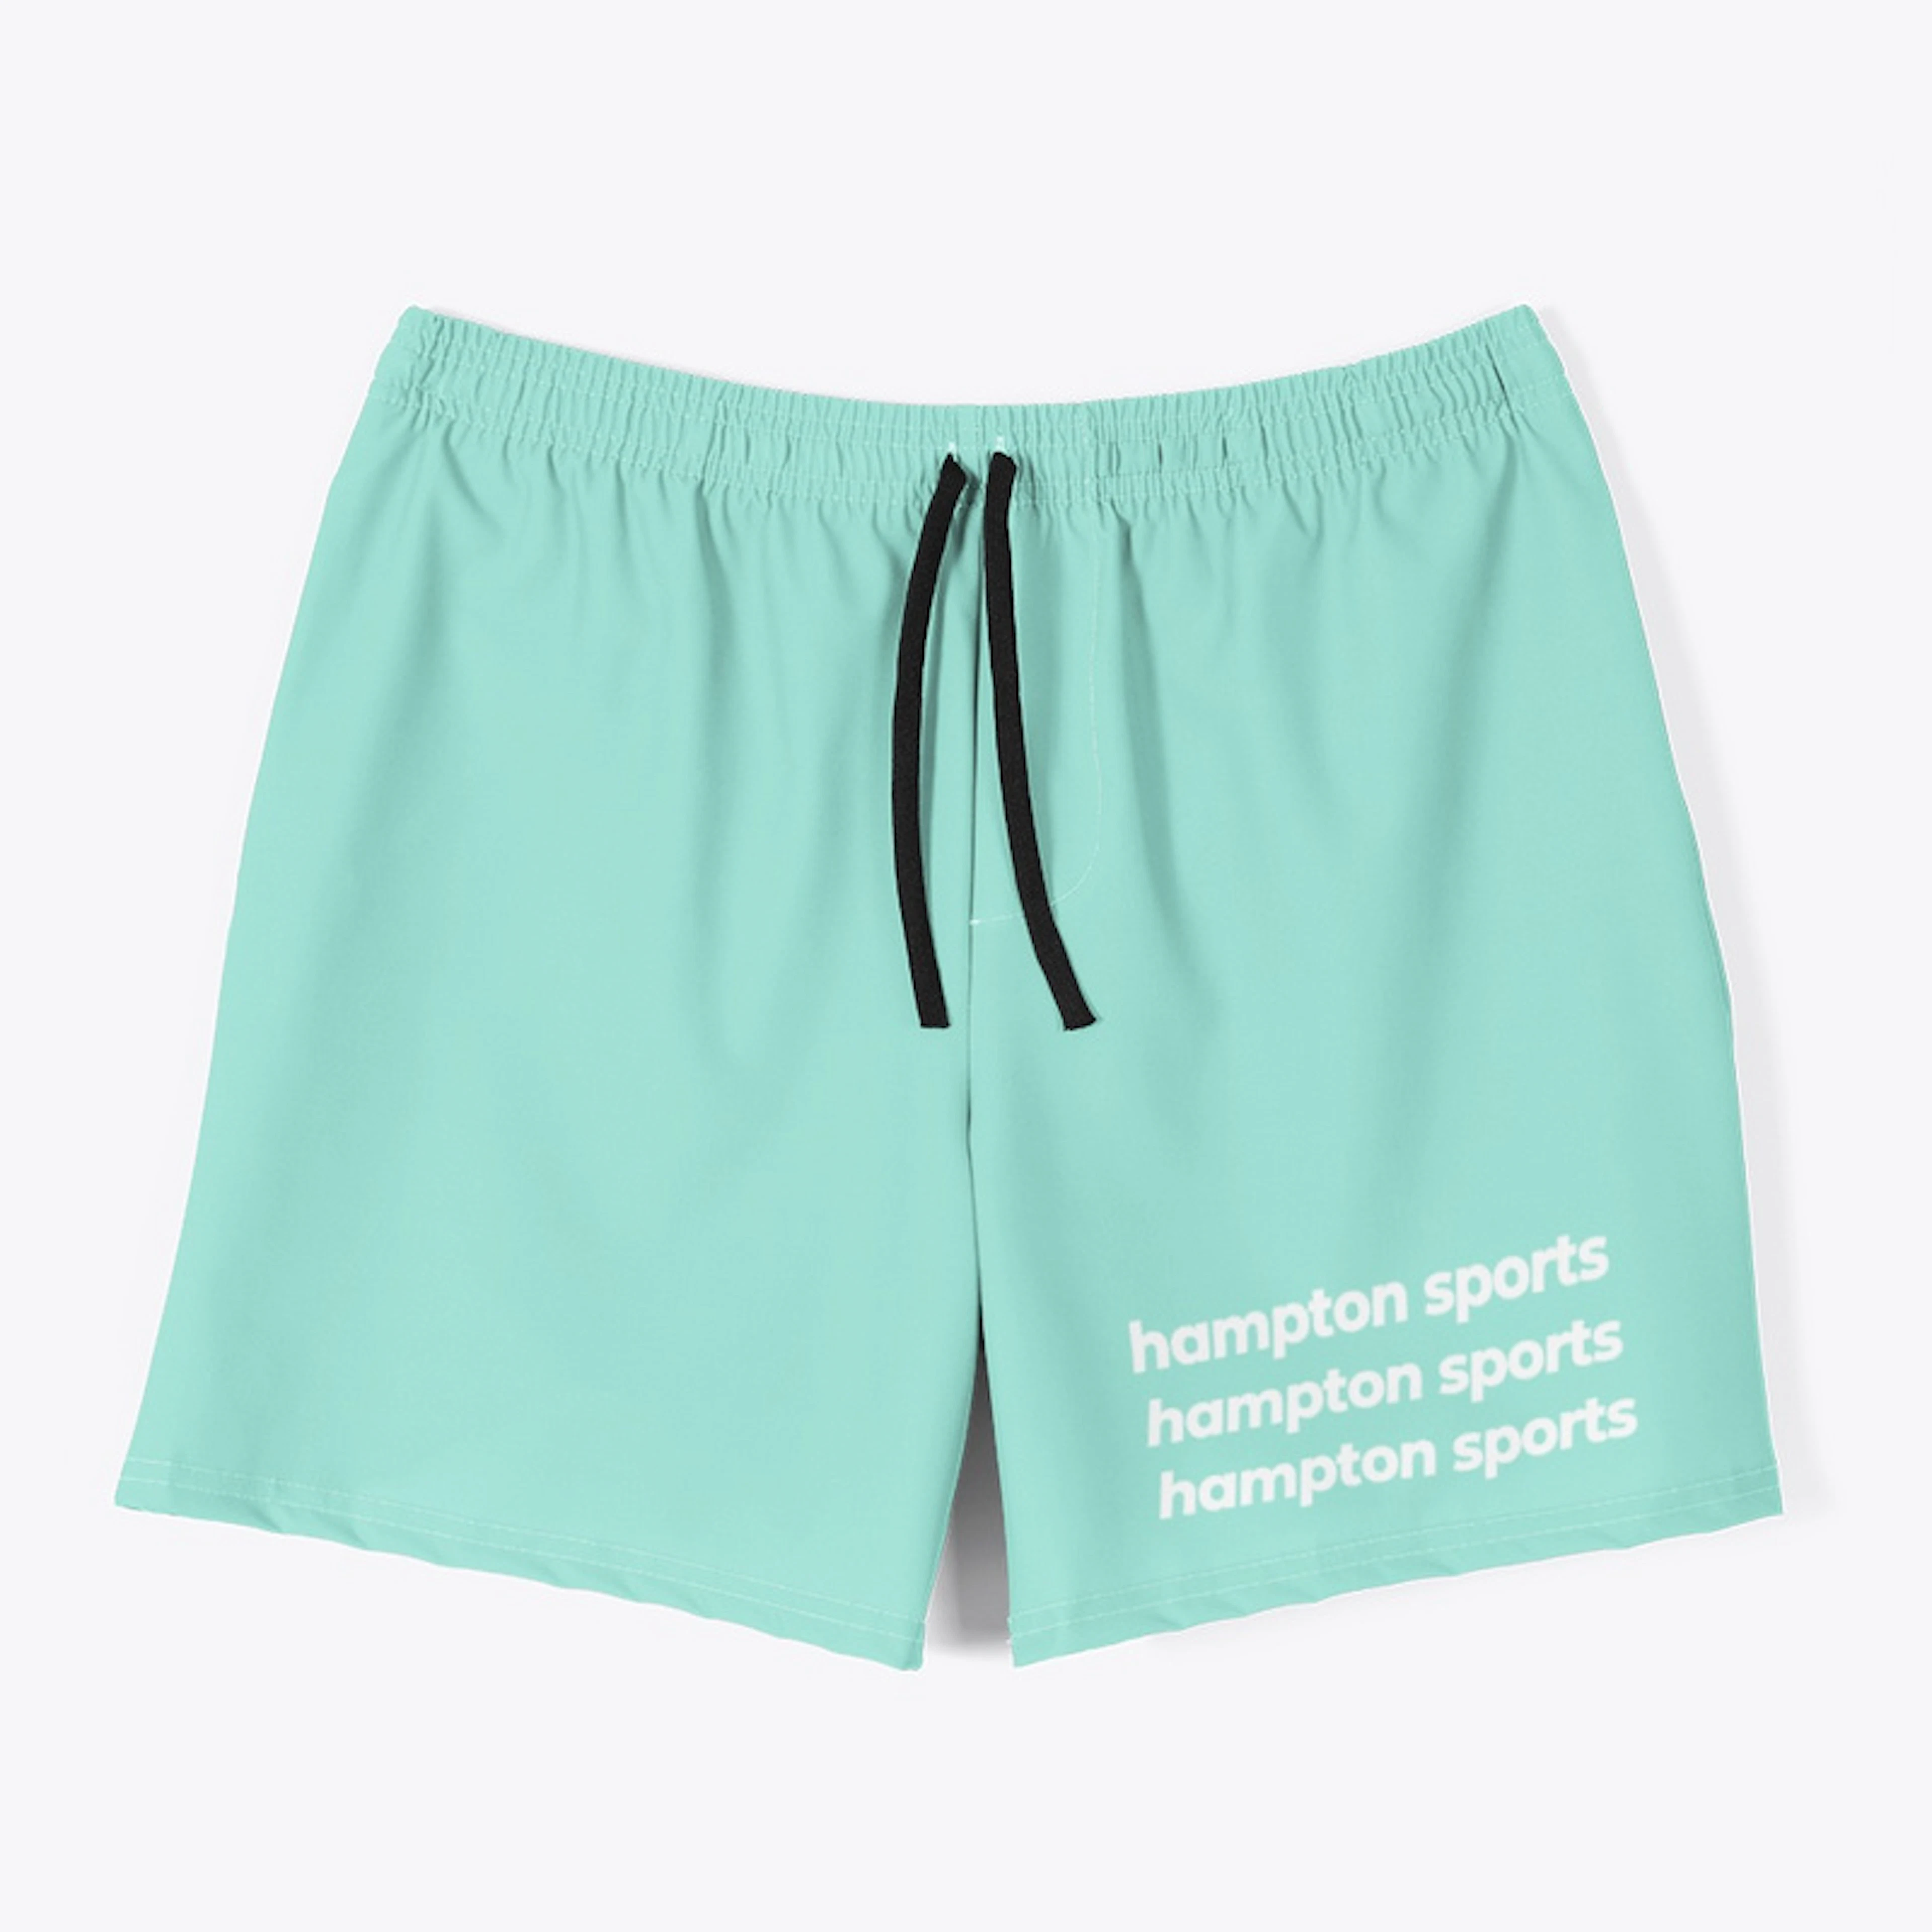 HS shorts